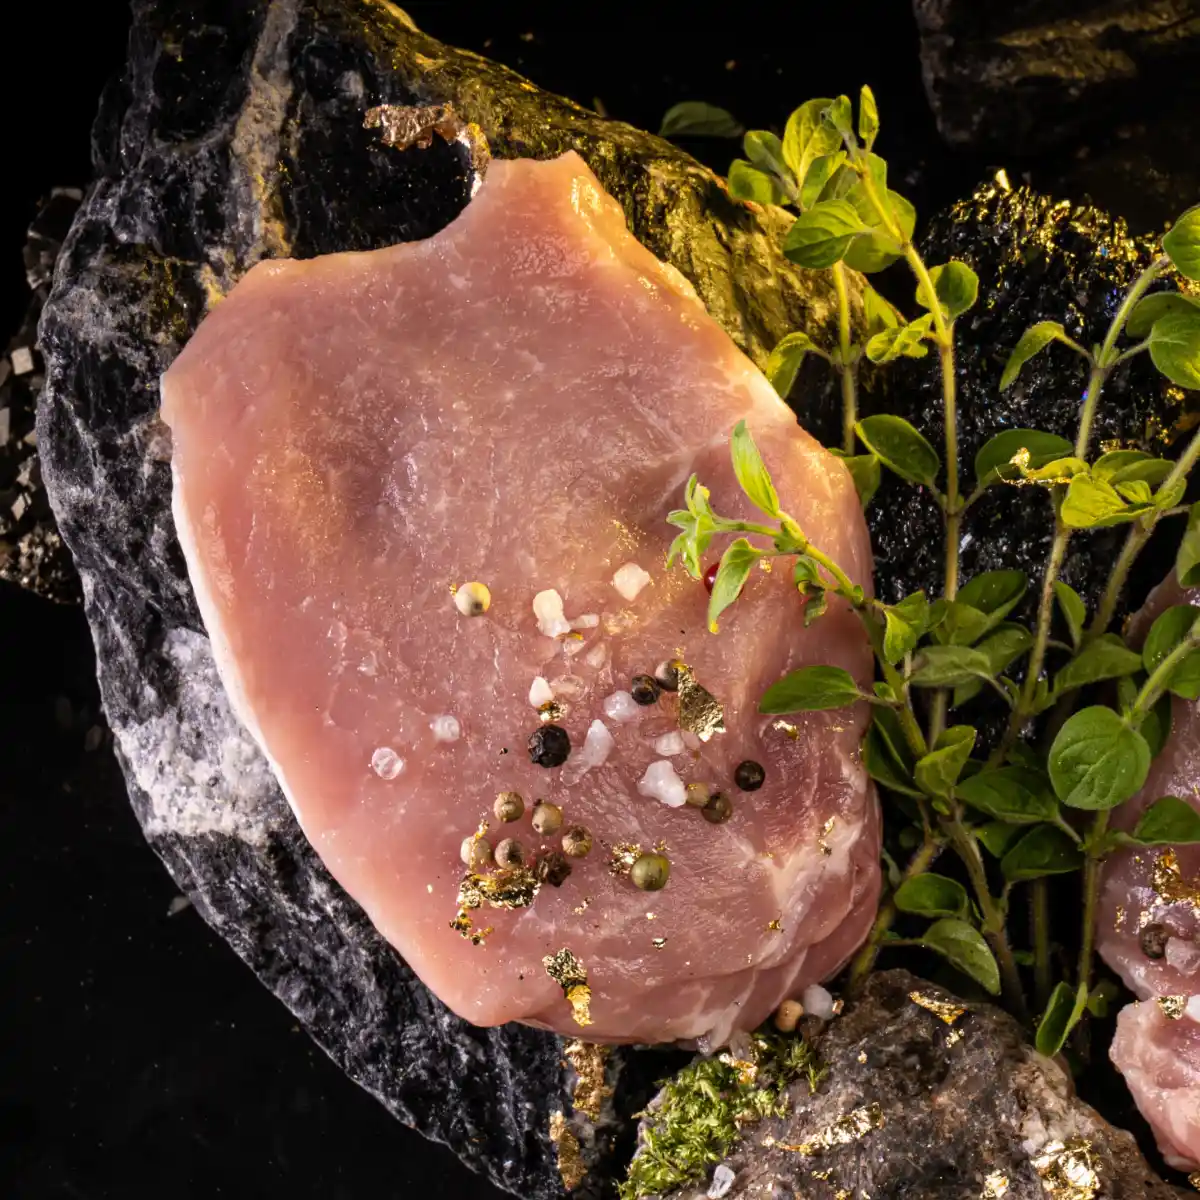 Ein Stück Steak aus dem Lachsbraten auf dunklem Untergrund